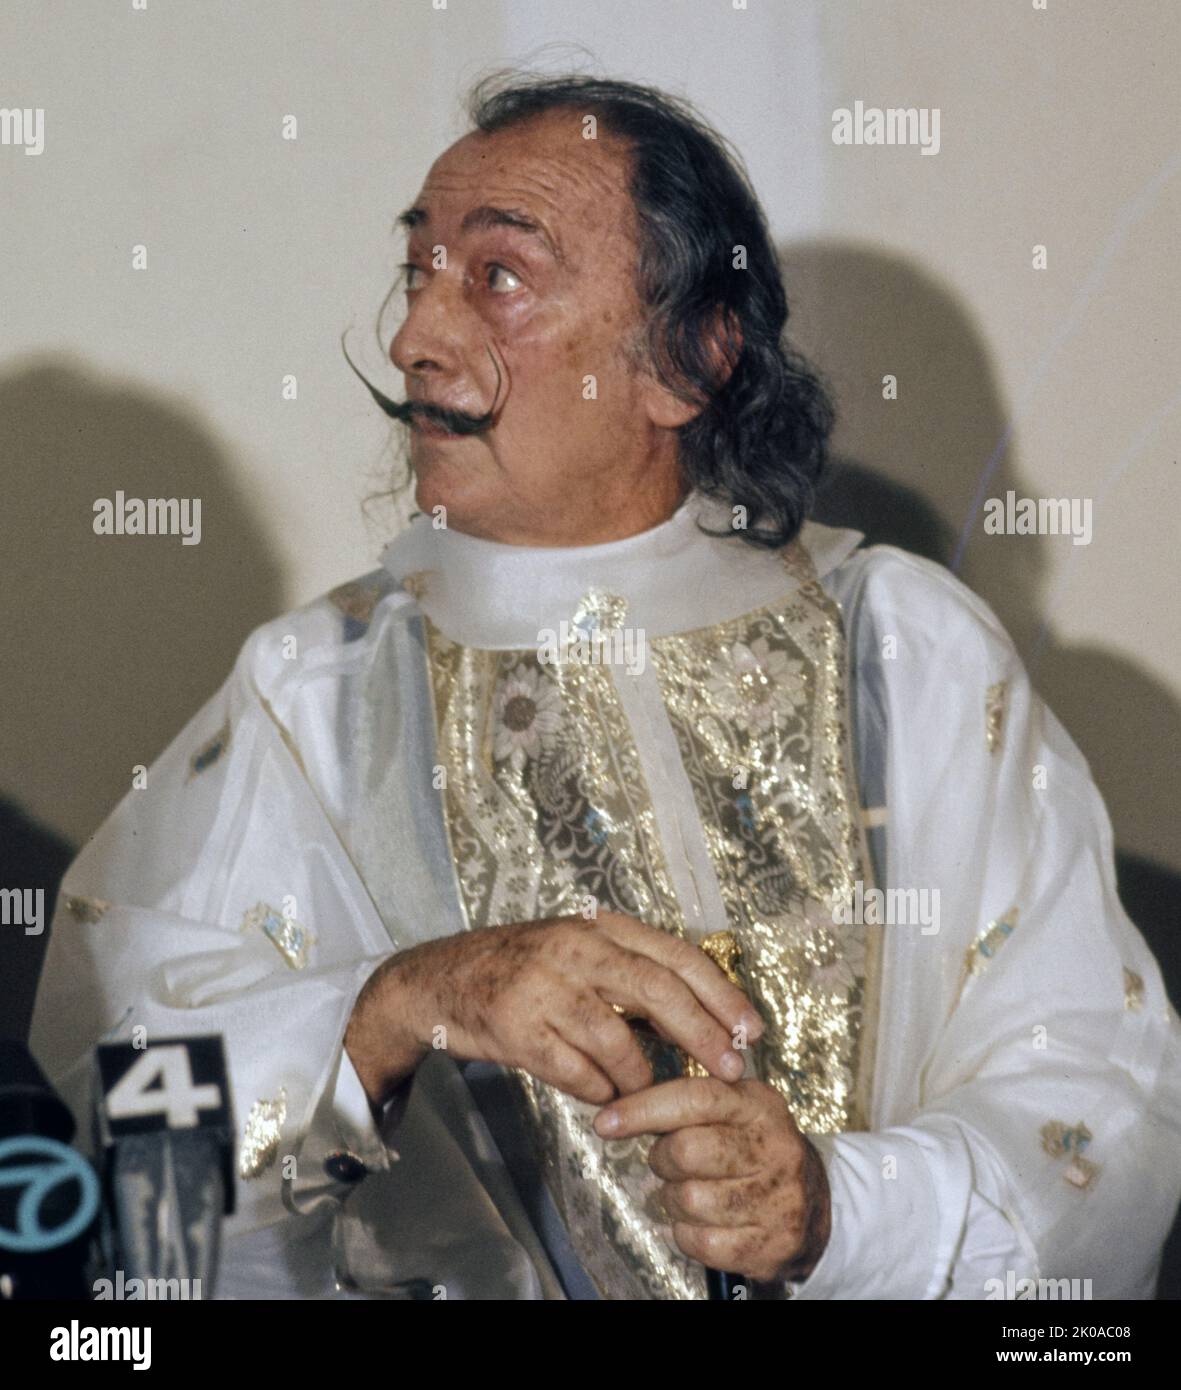 Salvador Dali, (1904 - 1989) artiste surréaliste espagnol renommé pour ses compétences techniques, son art du dessin précis et ses images frappantes et bizarres dans son travail. Banque D'Images